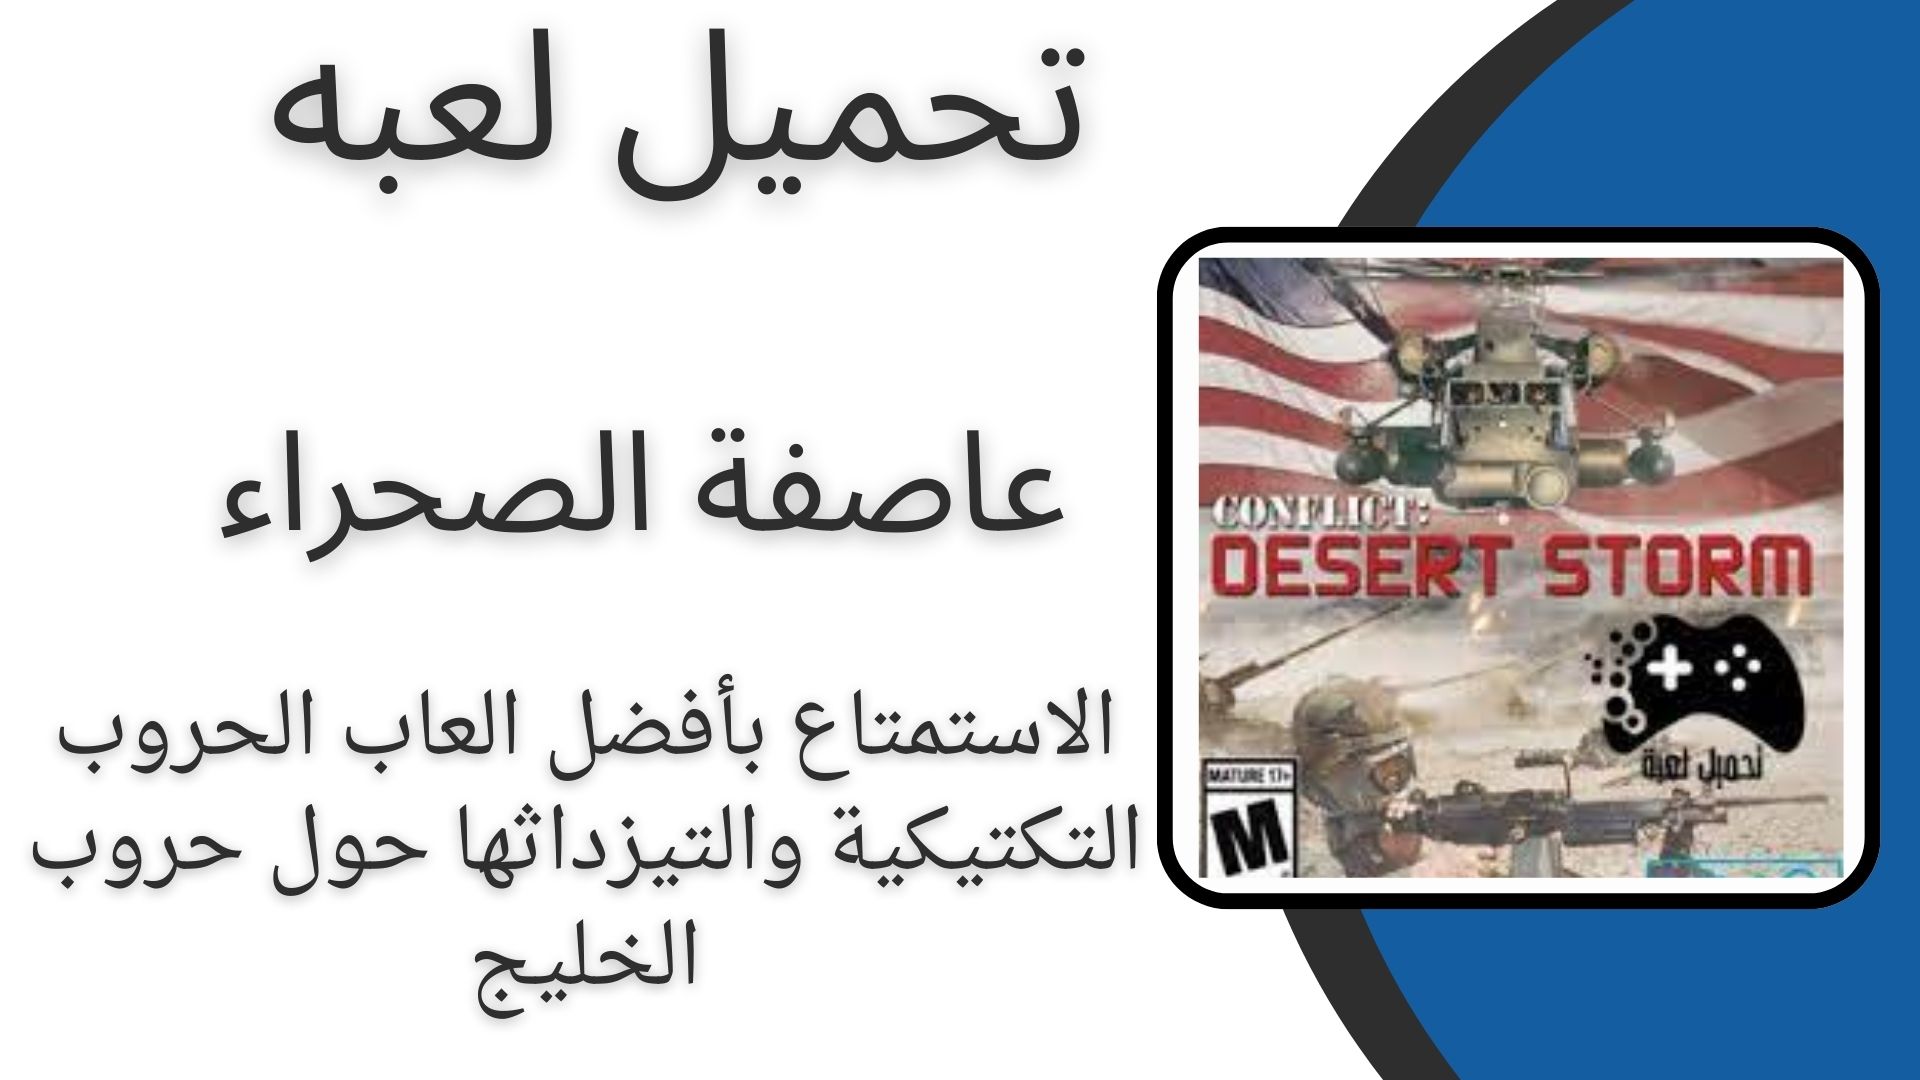 تحميل لعبة عاصفة الصحراء desert storm للاندوريد برابط مباشر مجانا